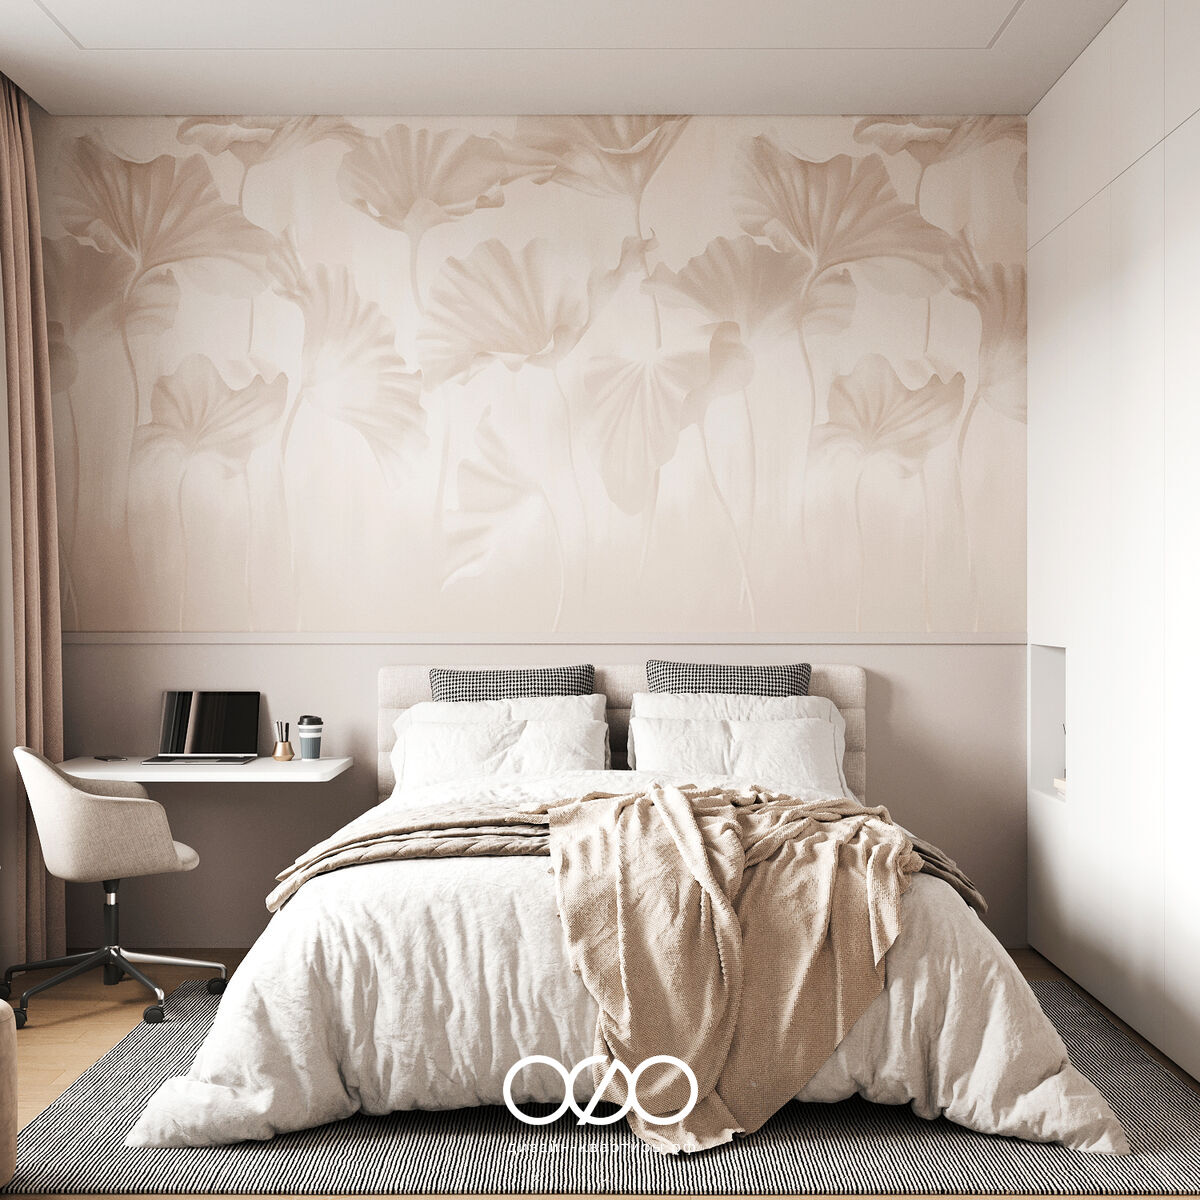 Дизайн-проект 2-комнатной квартиры 65 м2 в стиле современный минимализм. Москва, ЖК Nagatino i-land.